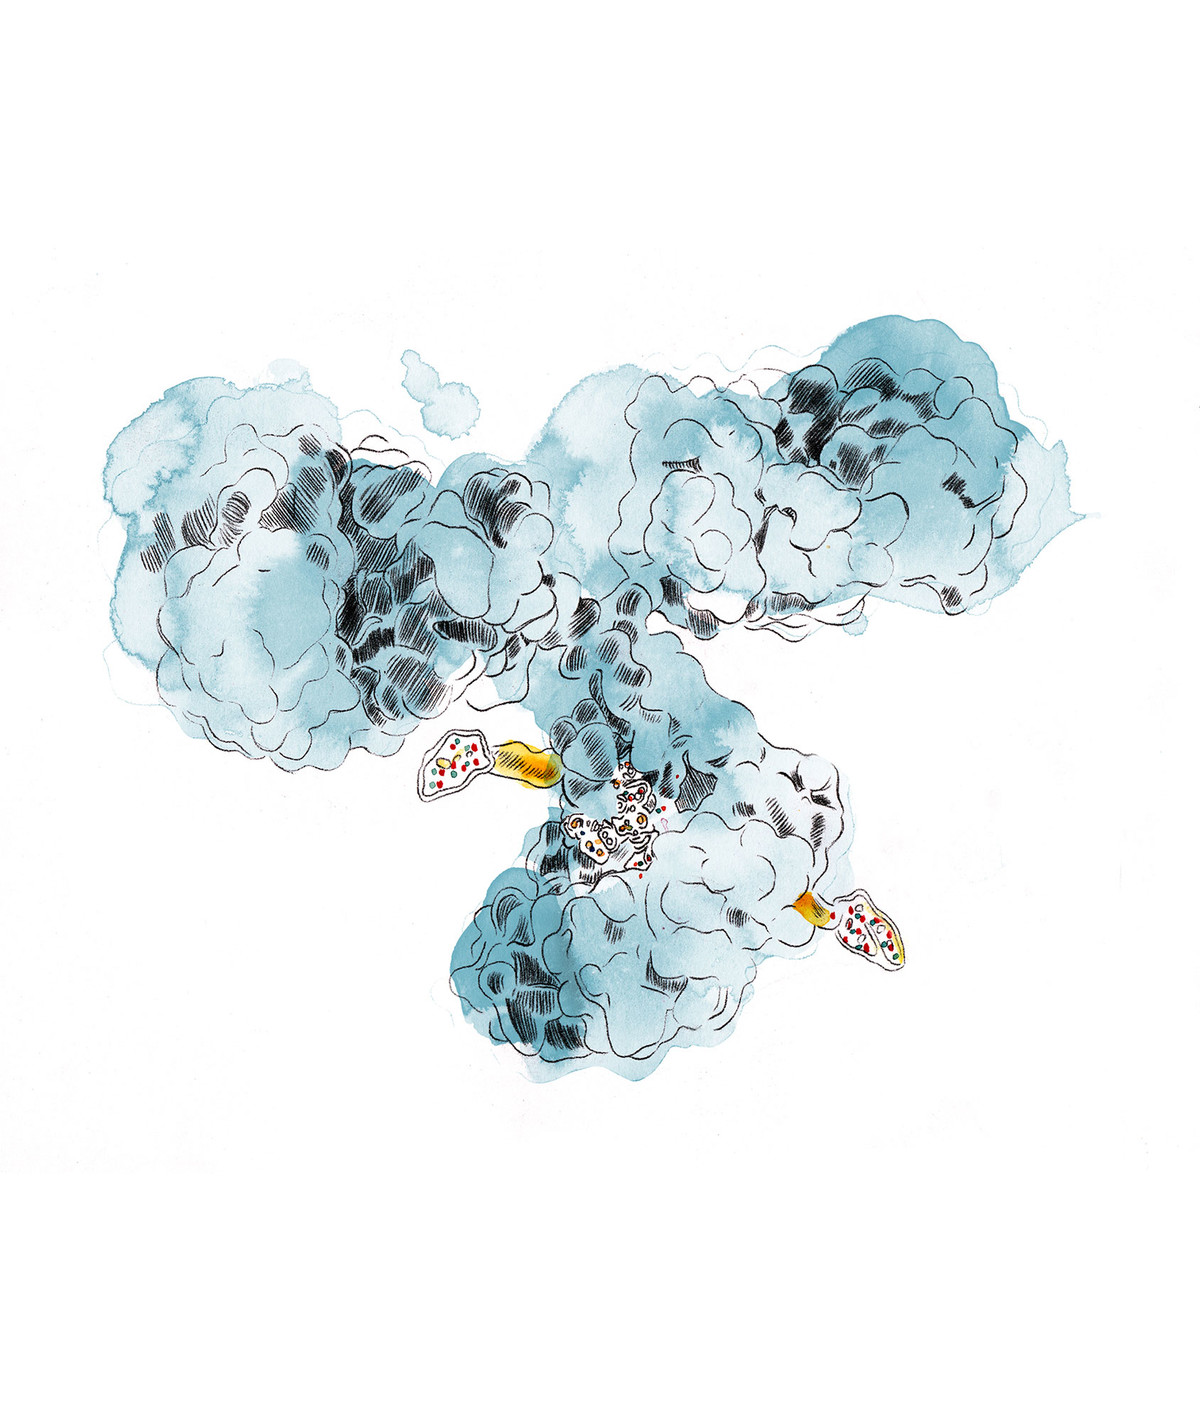 Pour créer de meilleurs traitements contre le cancer, Philipp Spycher utilise une enzyme destinée à fixer le principe actif à l’anticorps. La «colle» (jaune) joue un rôle décisif dans ce processus.